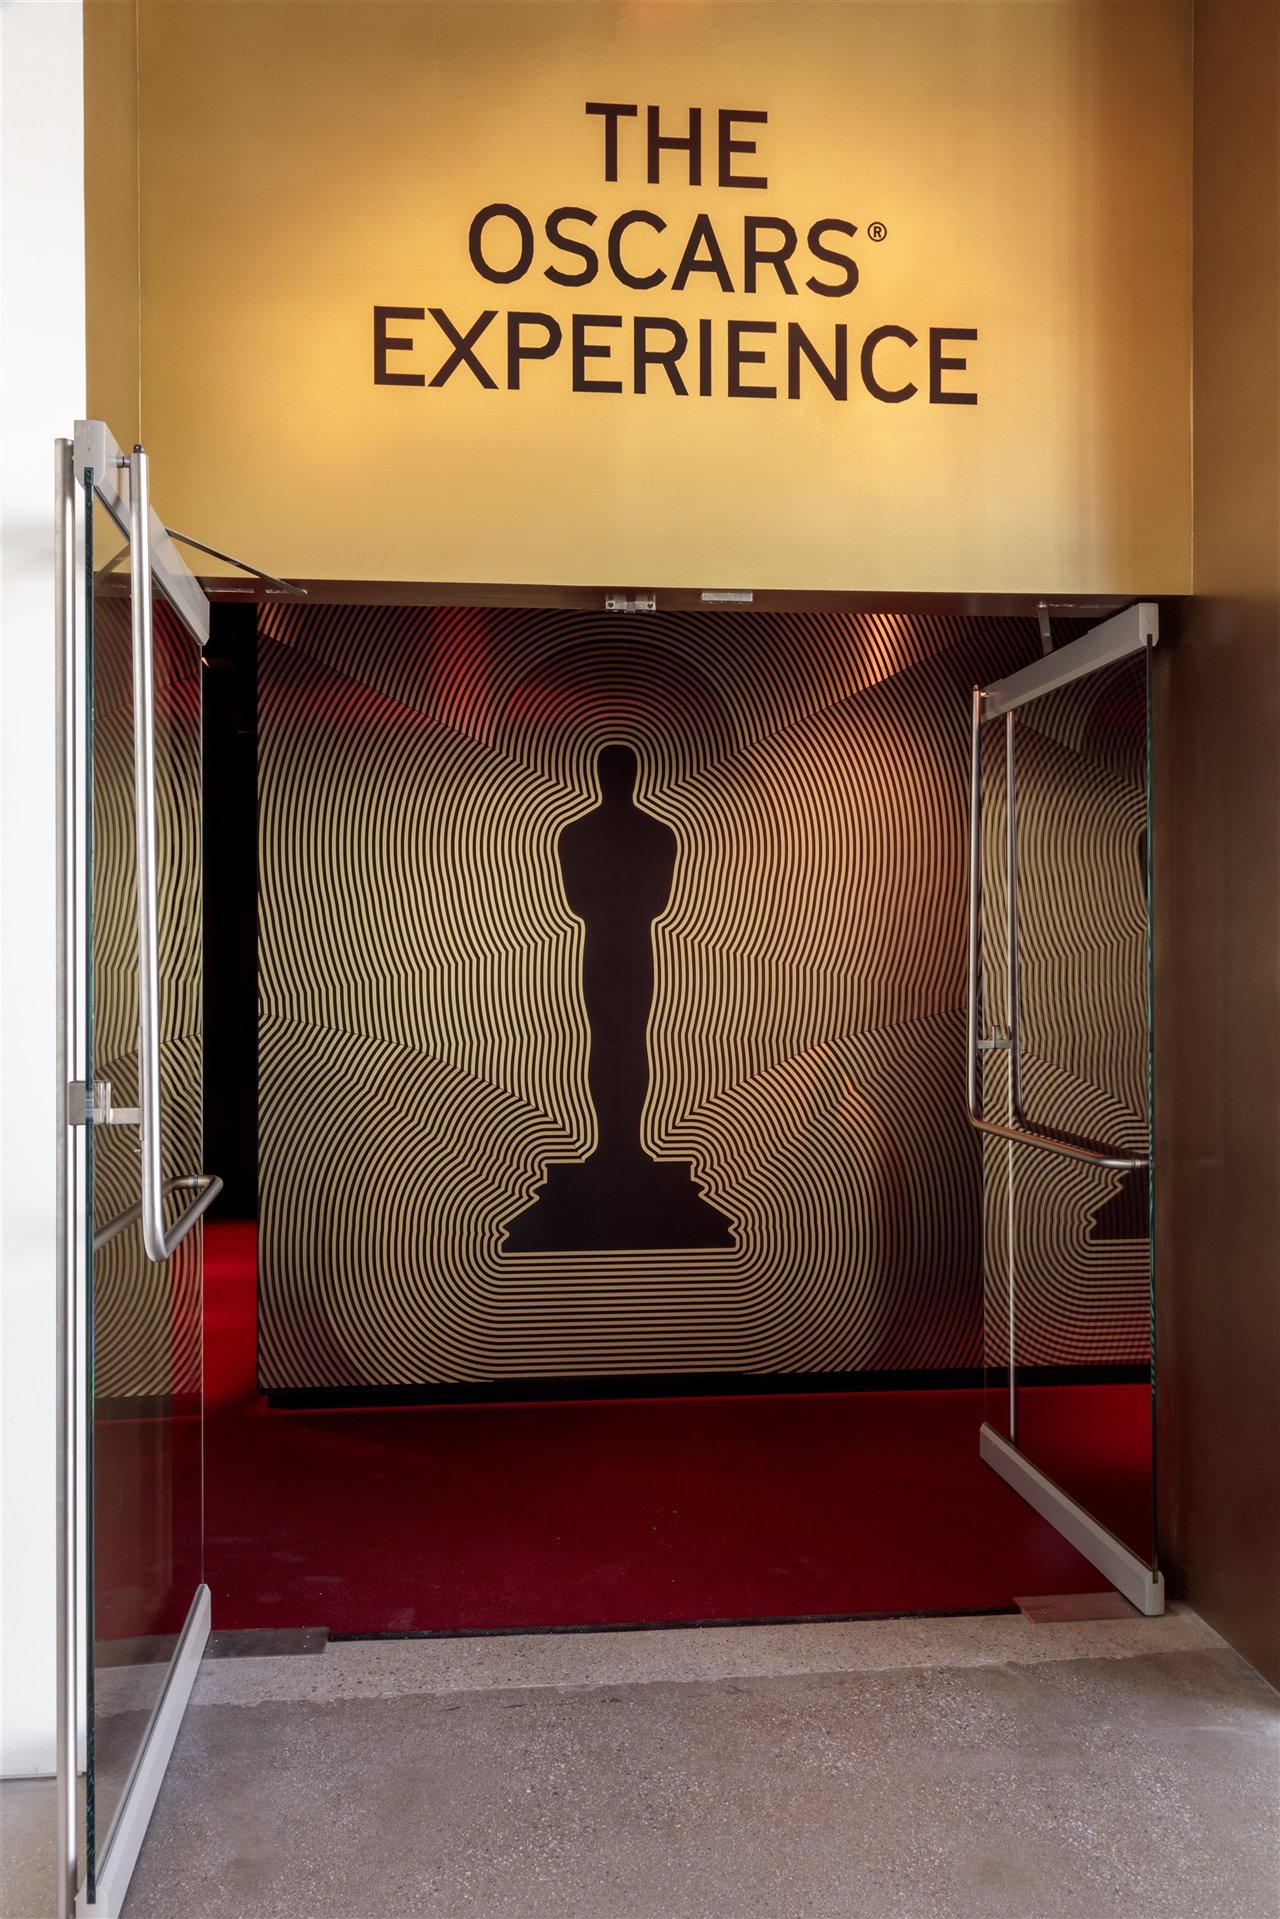 Entrada a la zona 'The Oscars© Experience' en el Museo de la Academia de Cine. Foto de Joshua White, JWPictures / © Academy Museum Foundation